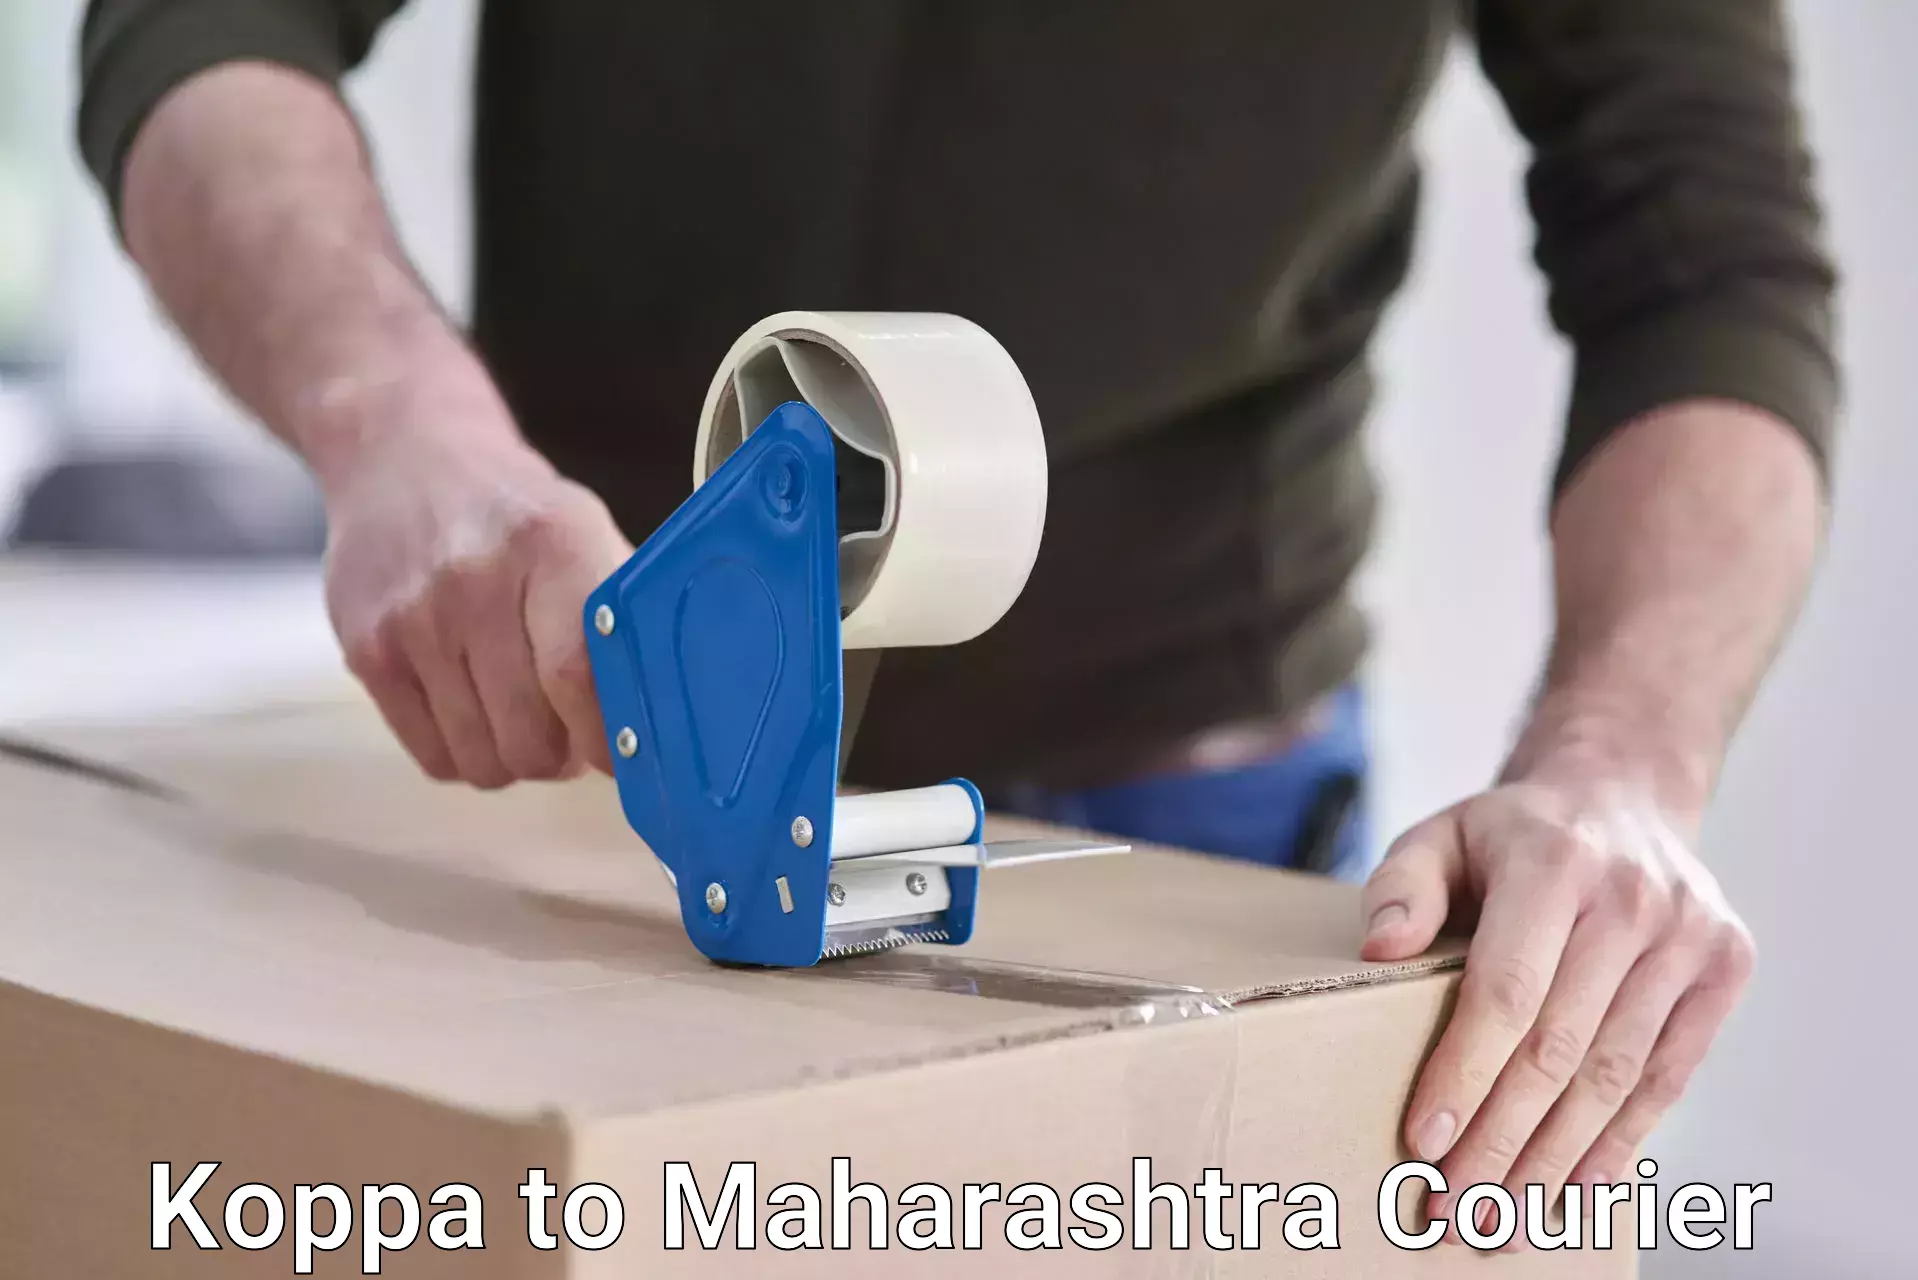 Courier service innovation Koppa to Maharashtra